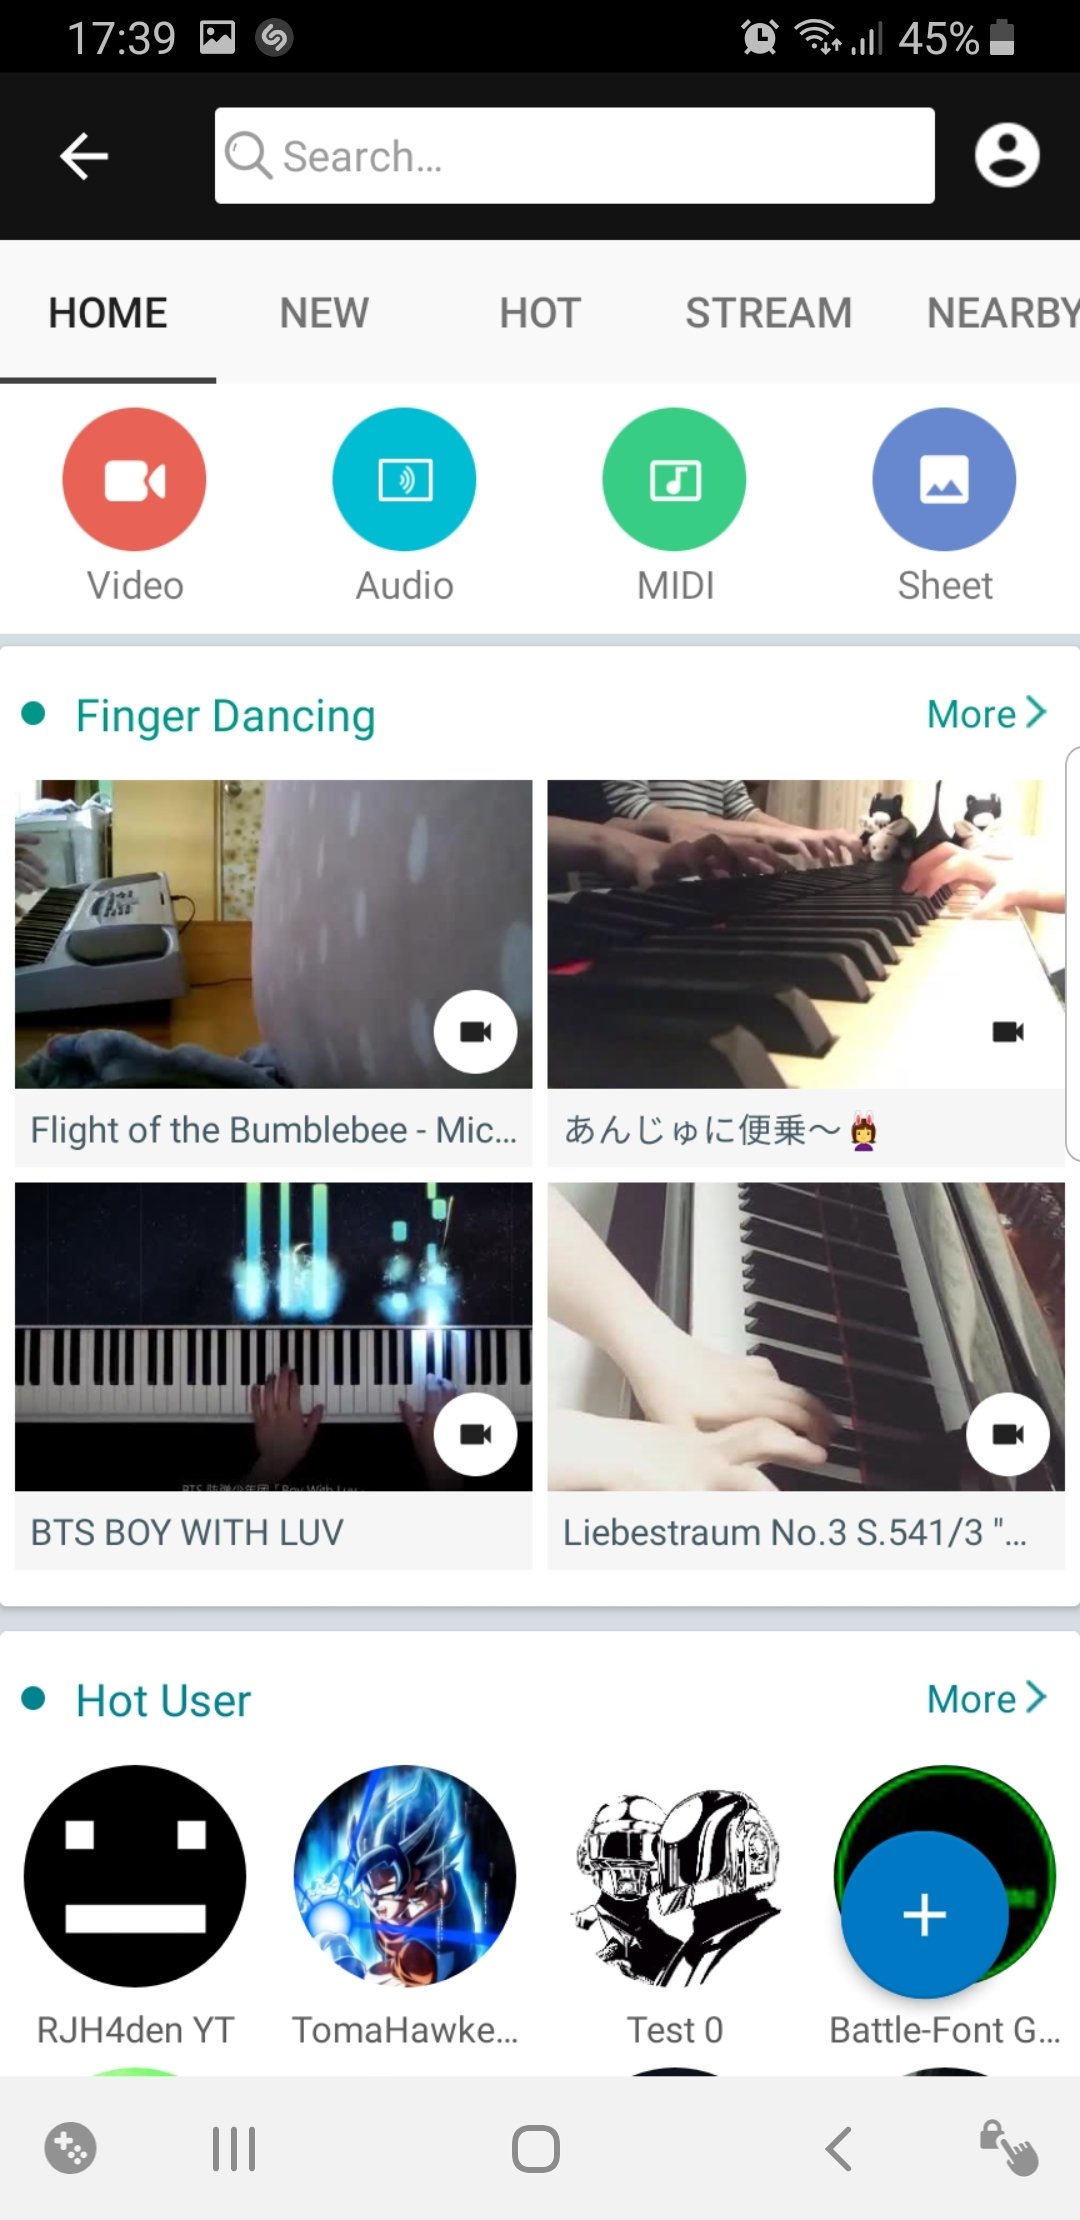 Perfect Piano - Baixar APK para Android